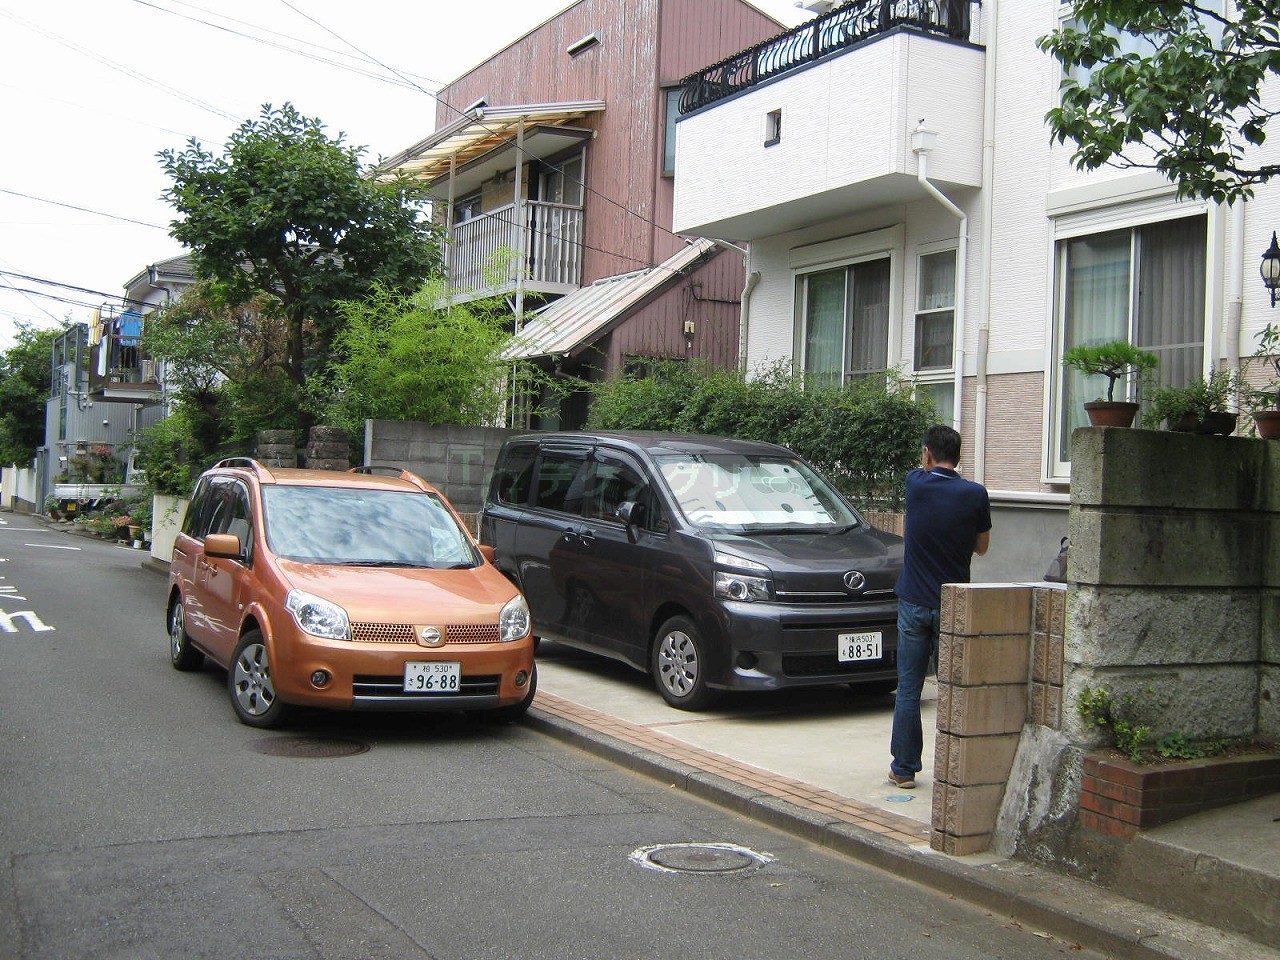 ウッドデッキのテクノグリーン スタッフブログ Blog Archive 縦列駐車場上のウッドデッキは鉄骨構造で 横浜市 調査編